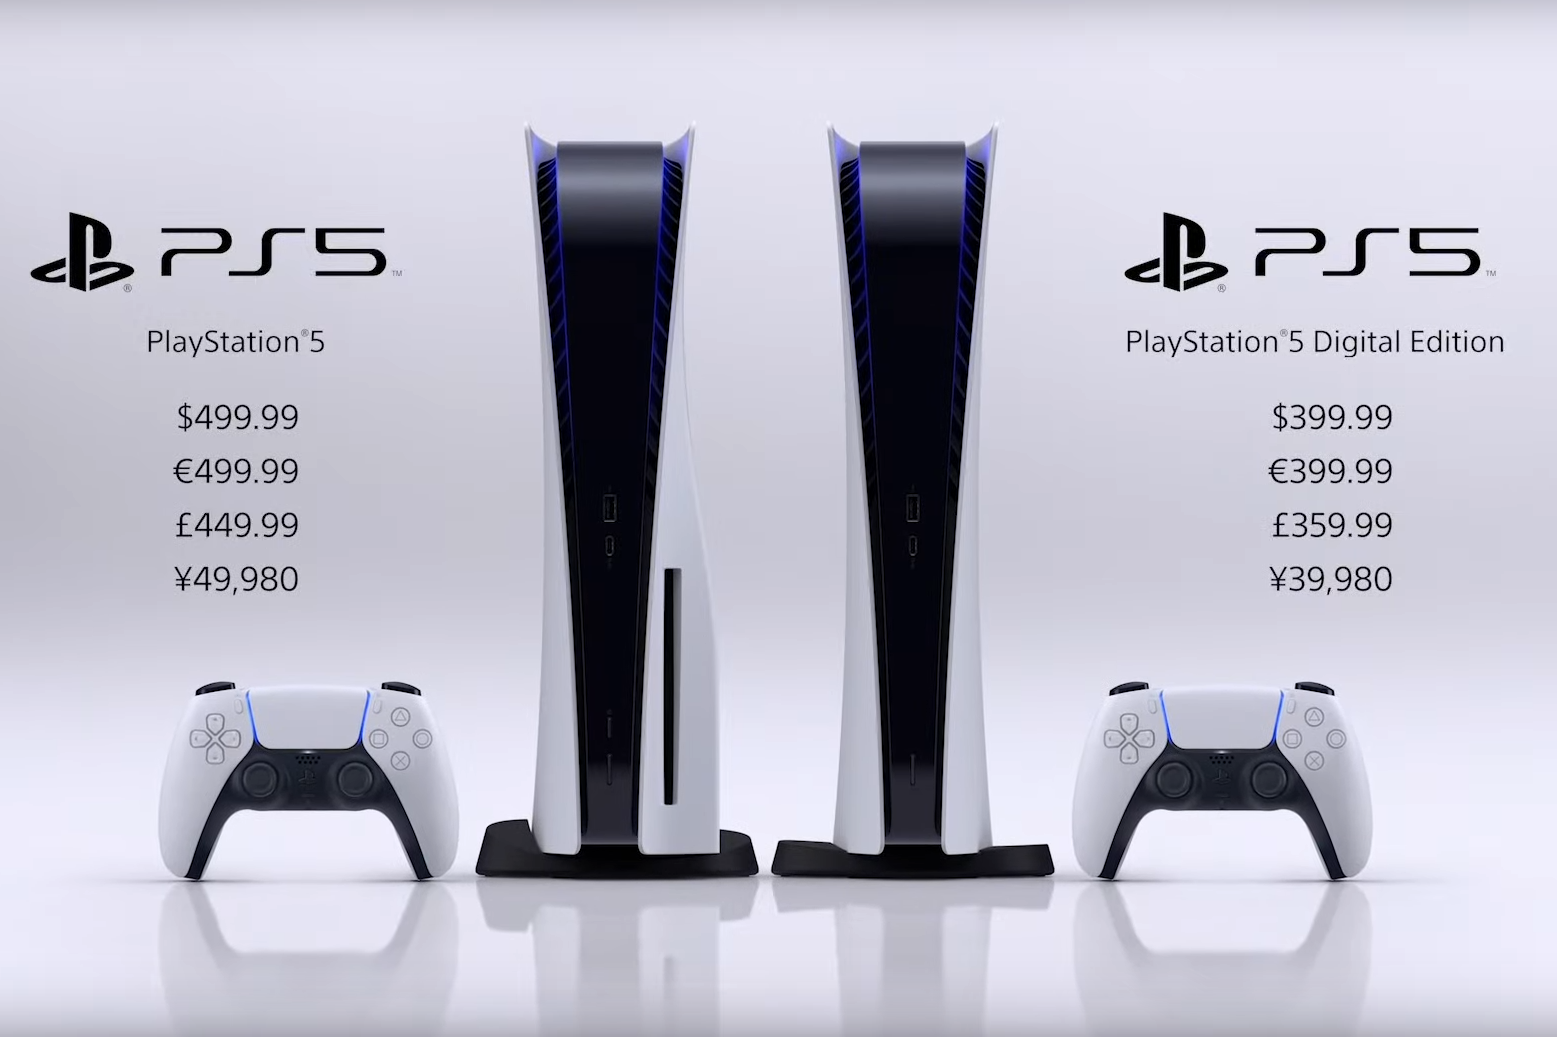 PlayStation 5-pris tillkännagivna, Disc Edition $ 499 och Digital Edition $ 399